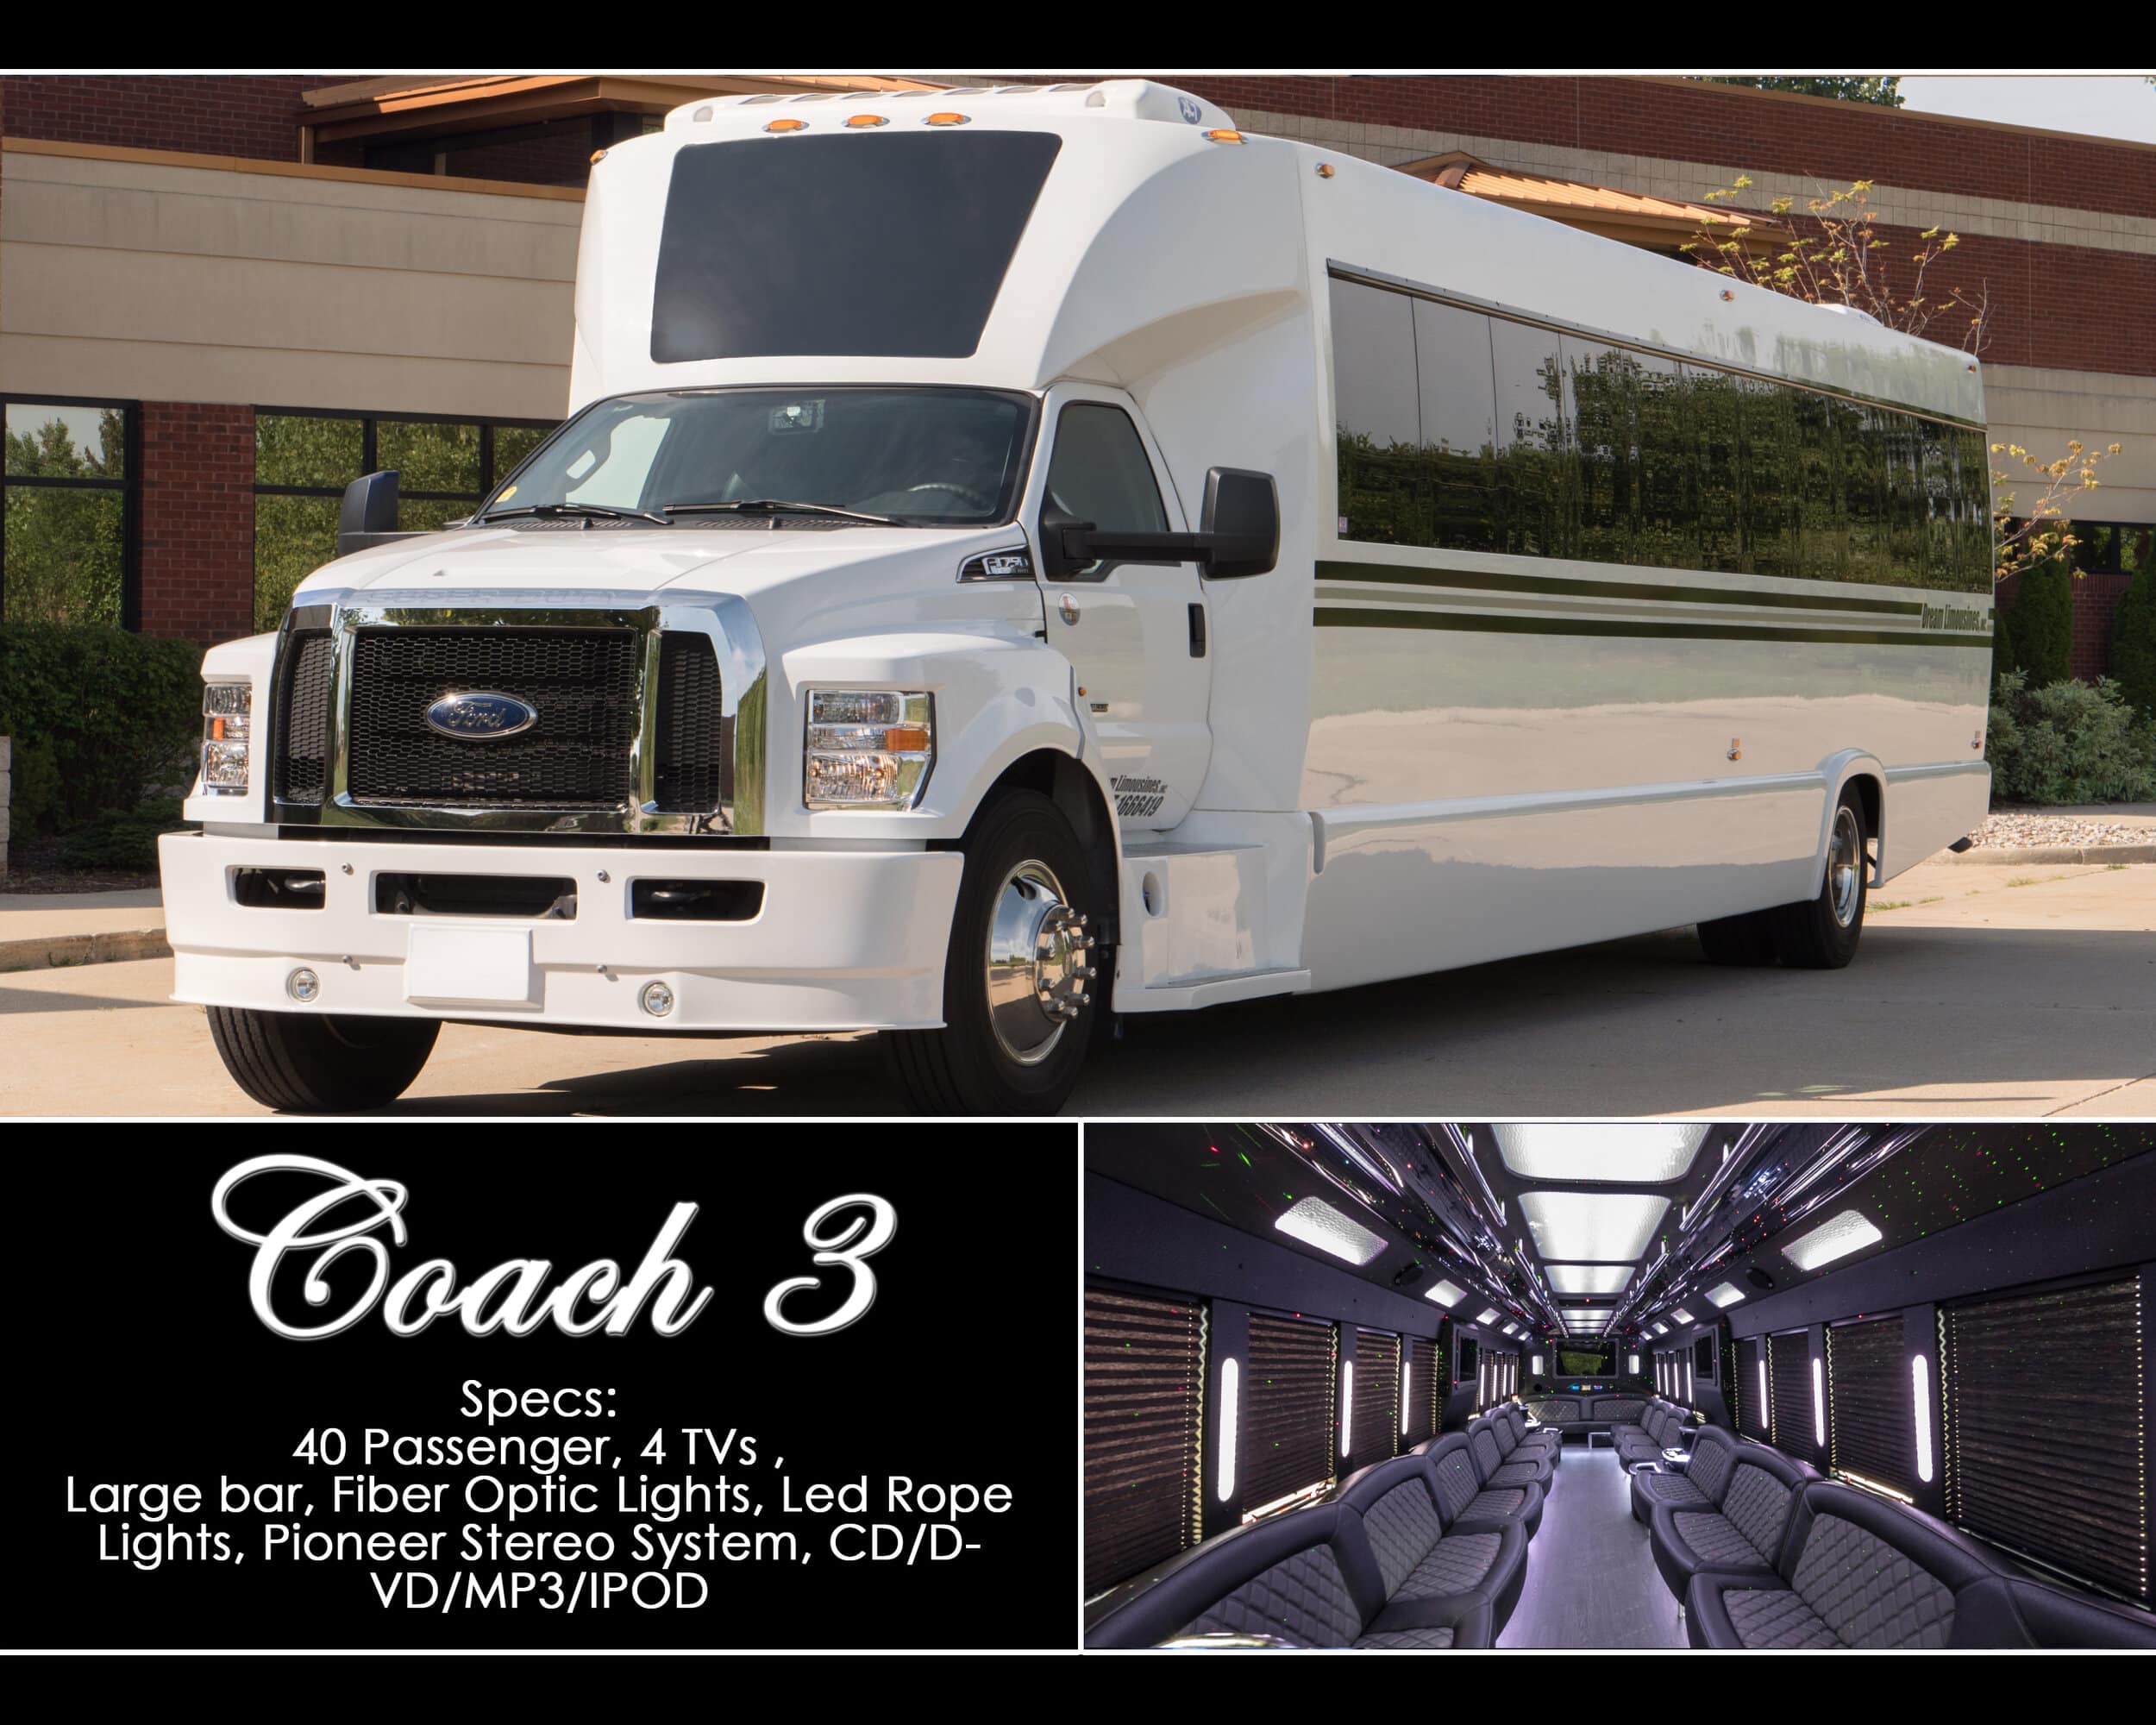 Coach 3 Party Bus